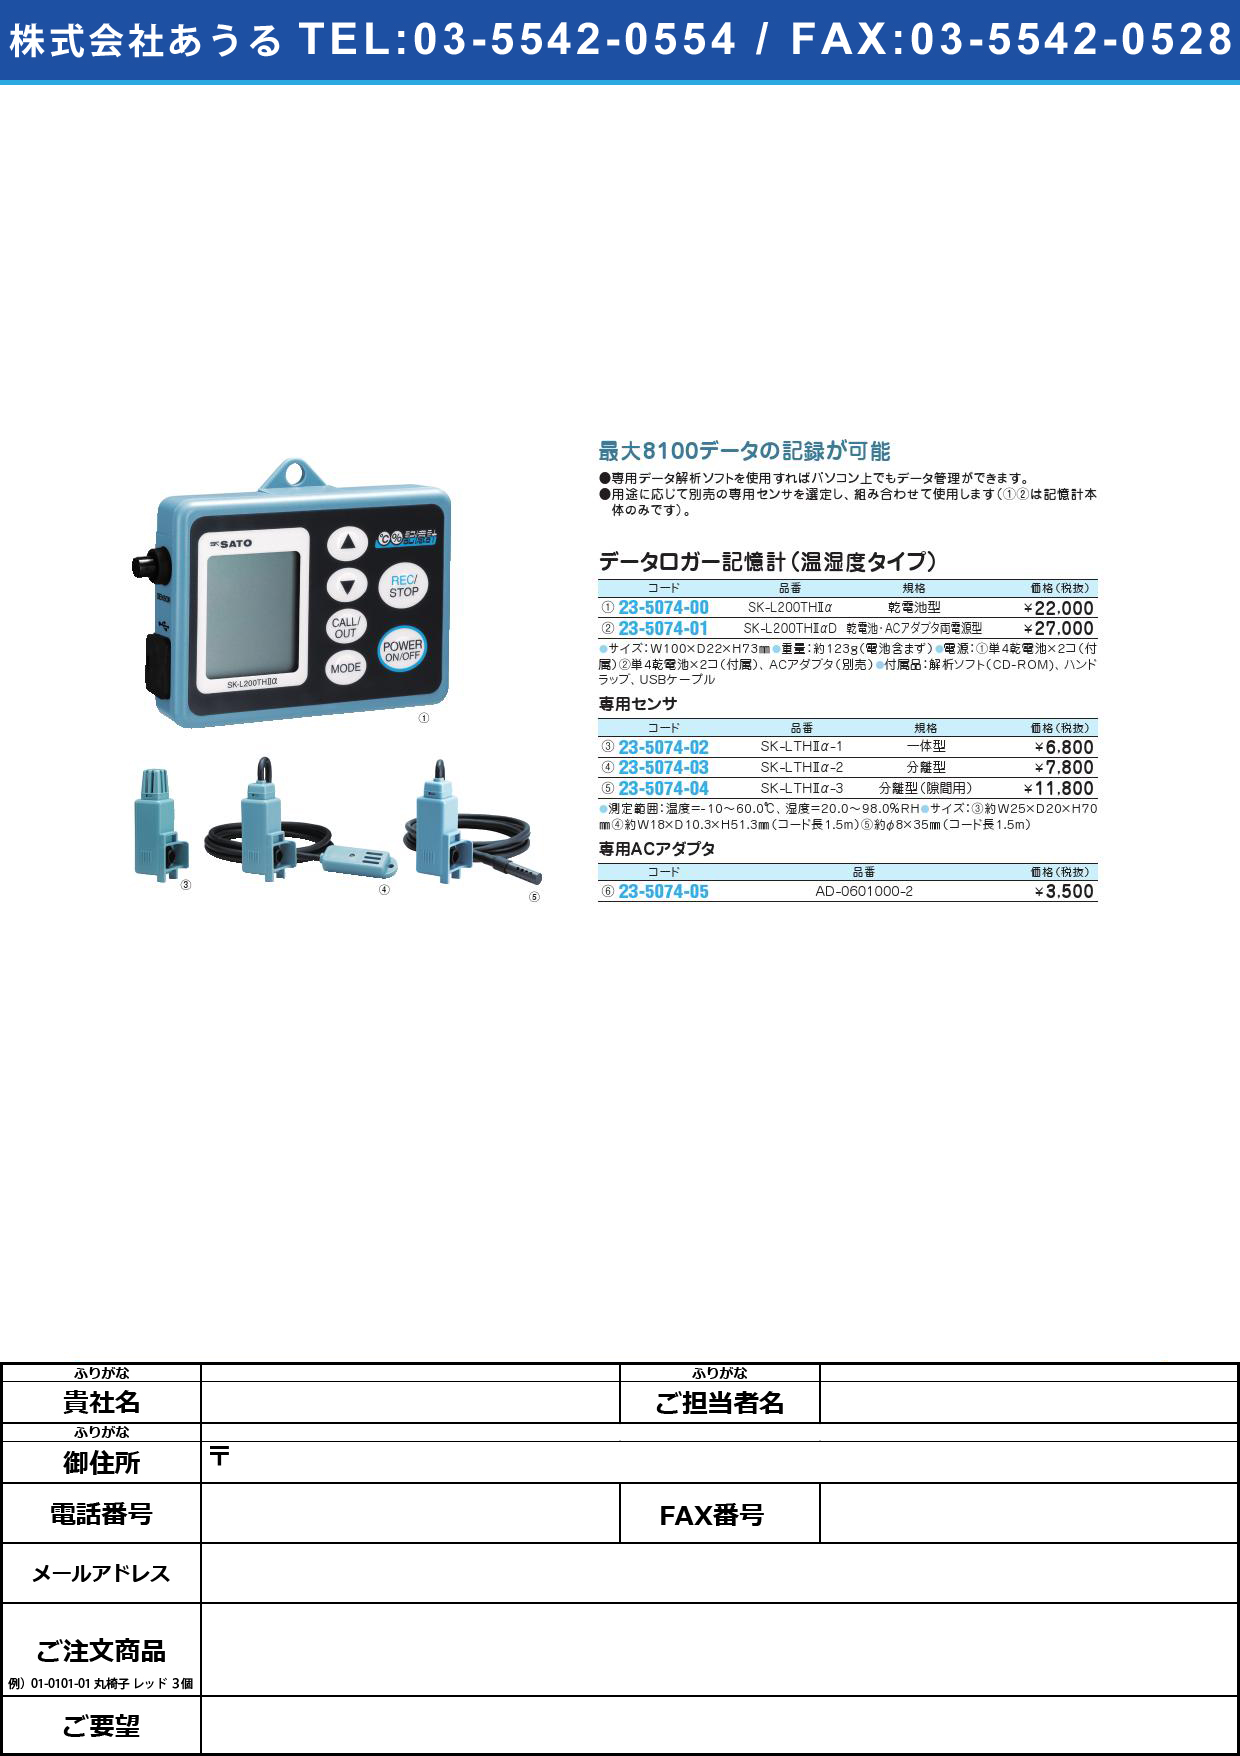 (23-5074-01)データロガー記憶計（温湿度タイプ） SK-L200TH2ADﾃﾞｰﾀﾛｶﾞｰｷｵｸｹｲ(23-5074-01)【1台単位】【2013年カタログ商品】